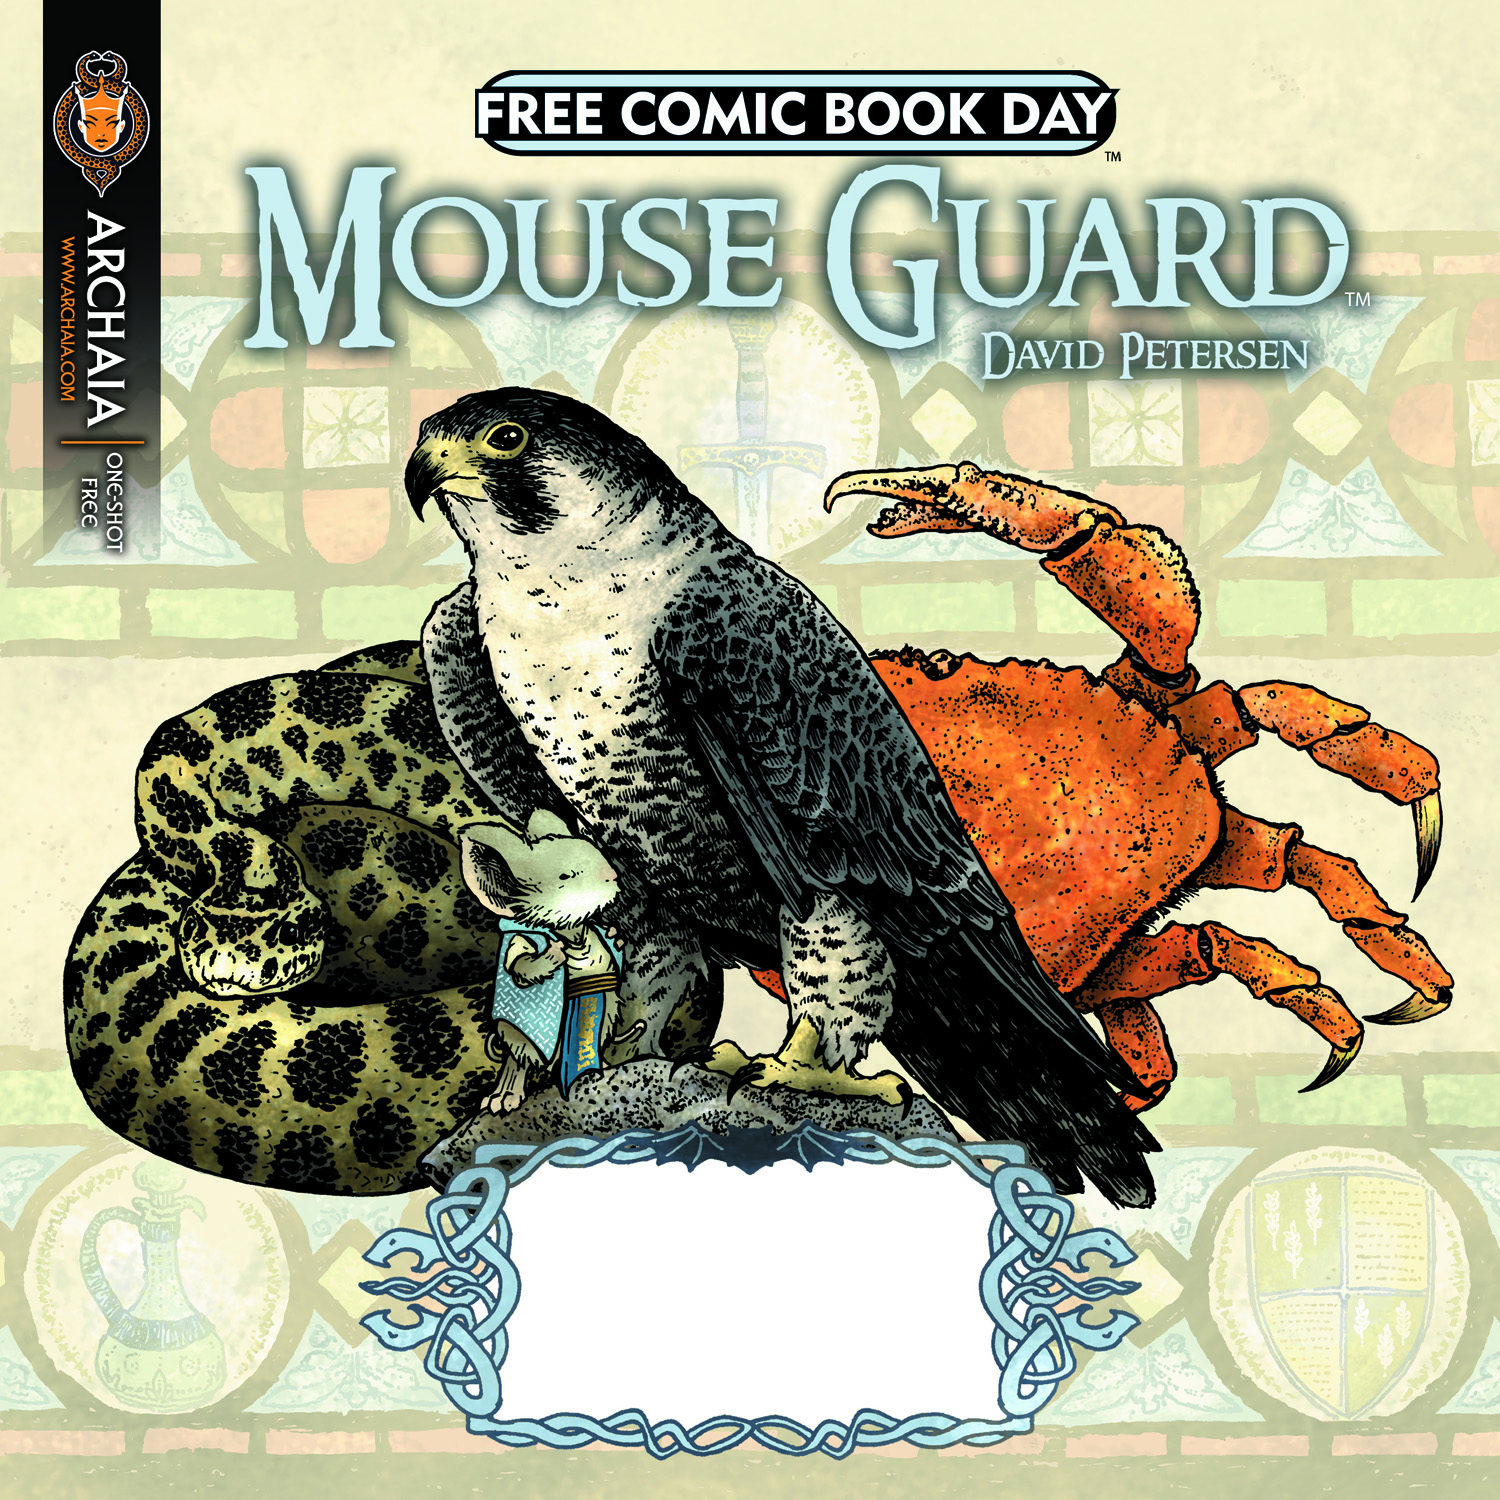 FCBD 2011 - Mouse Guard